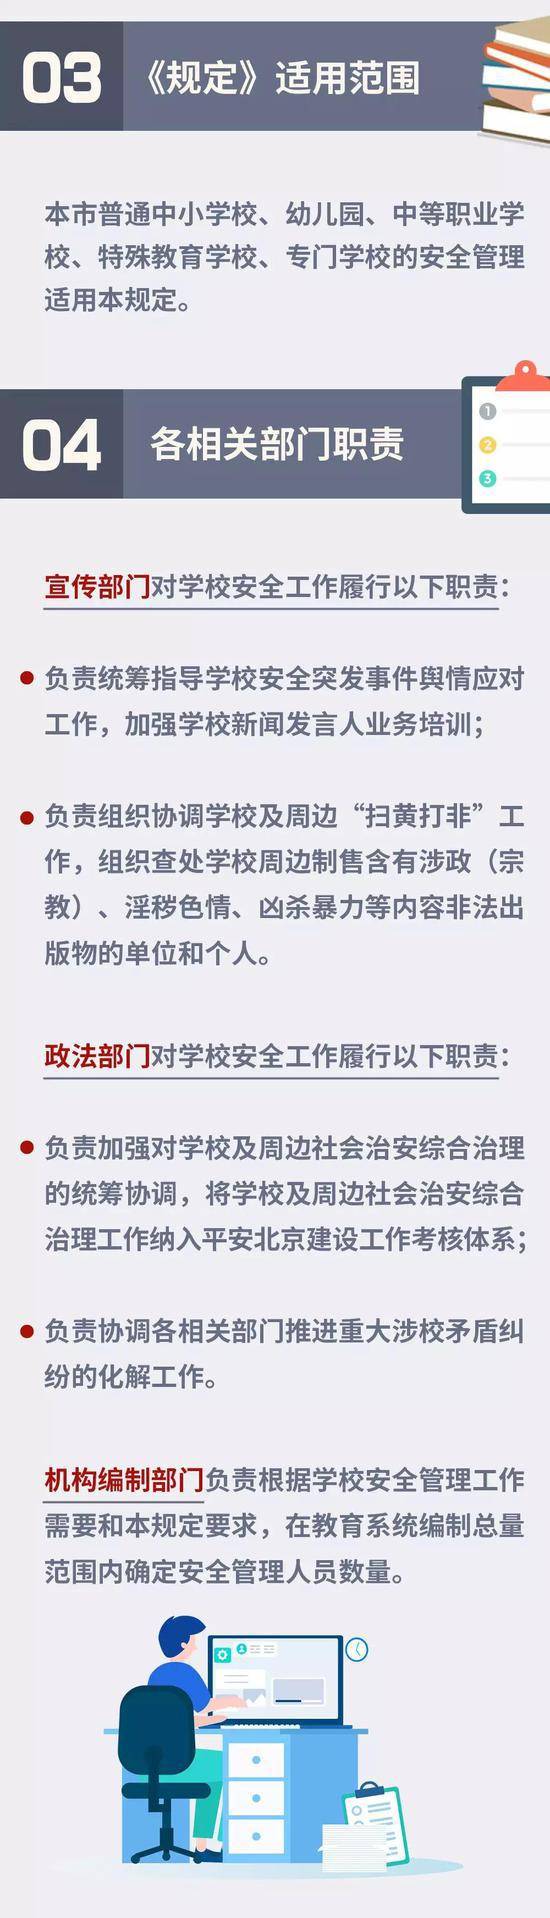 《北京中小学校幼儿园安全管理规定(试行)》发布